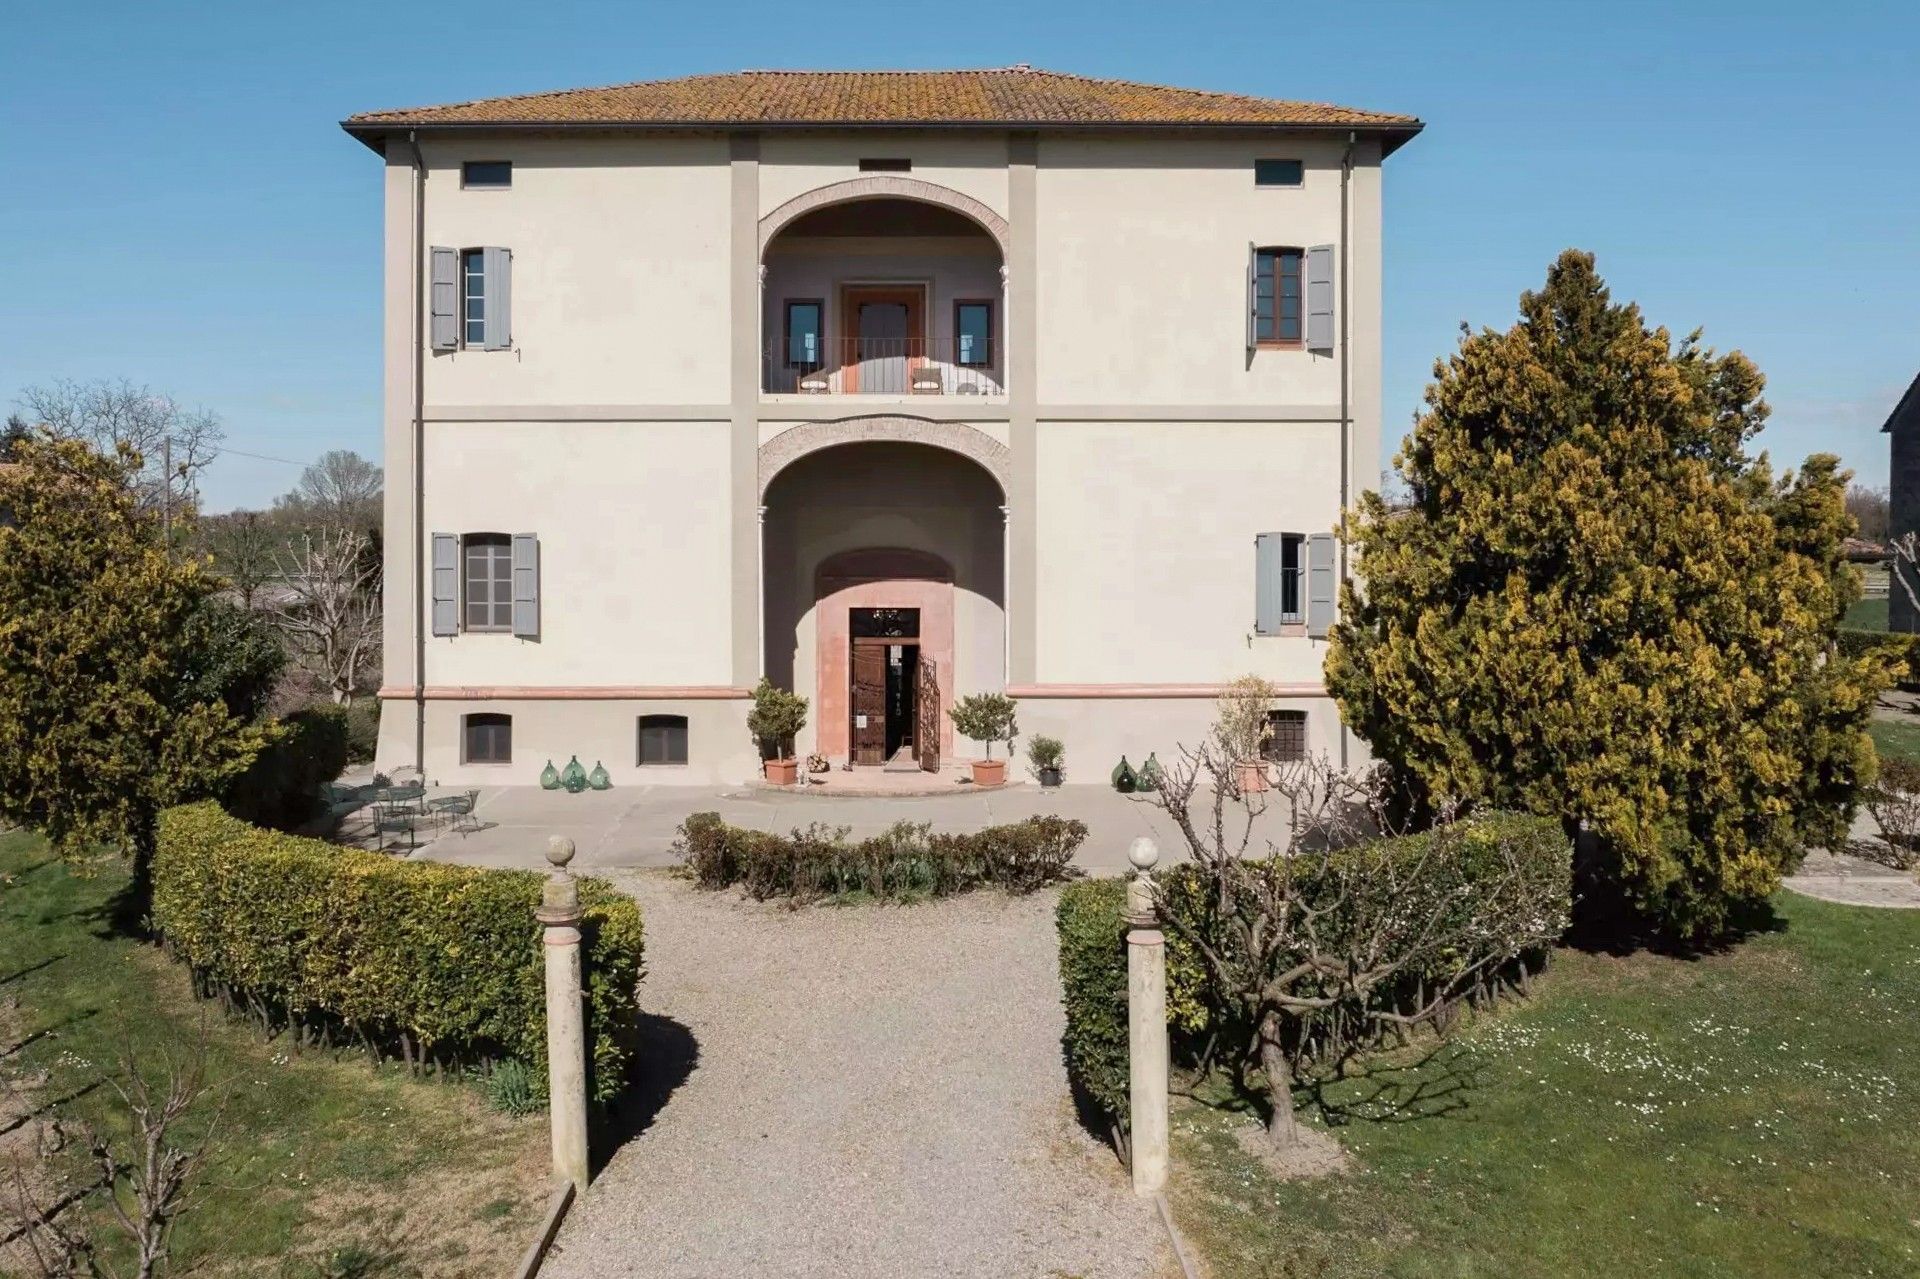 Billeder Villa med lille vingård nord for Parma